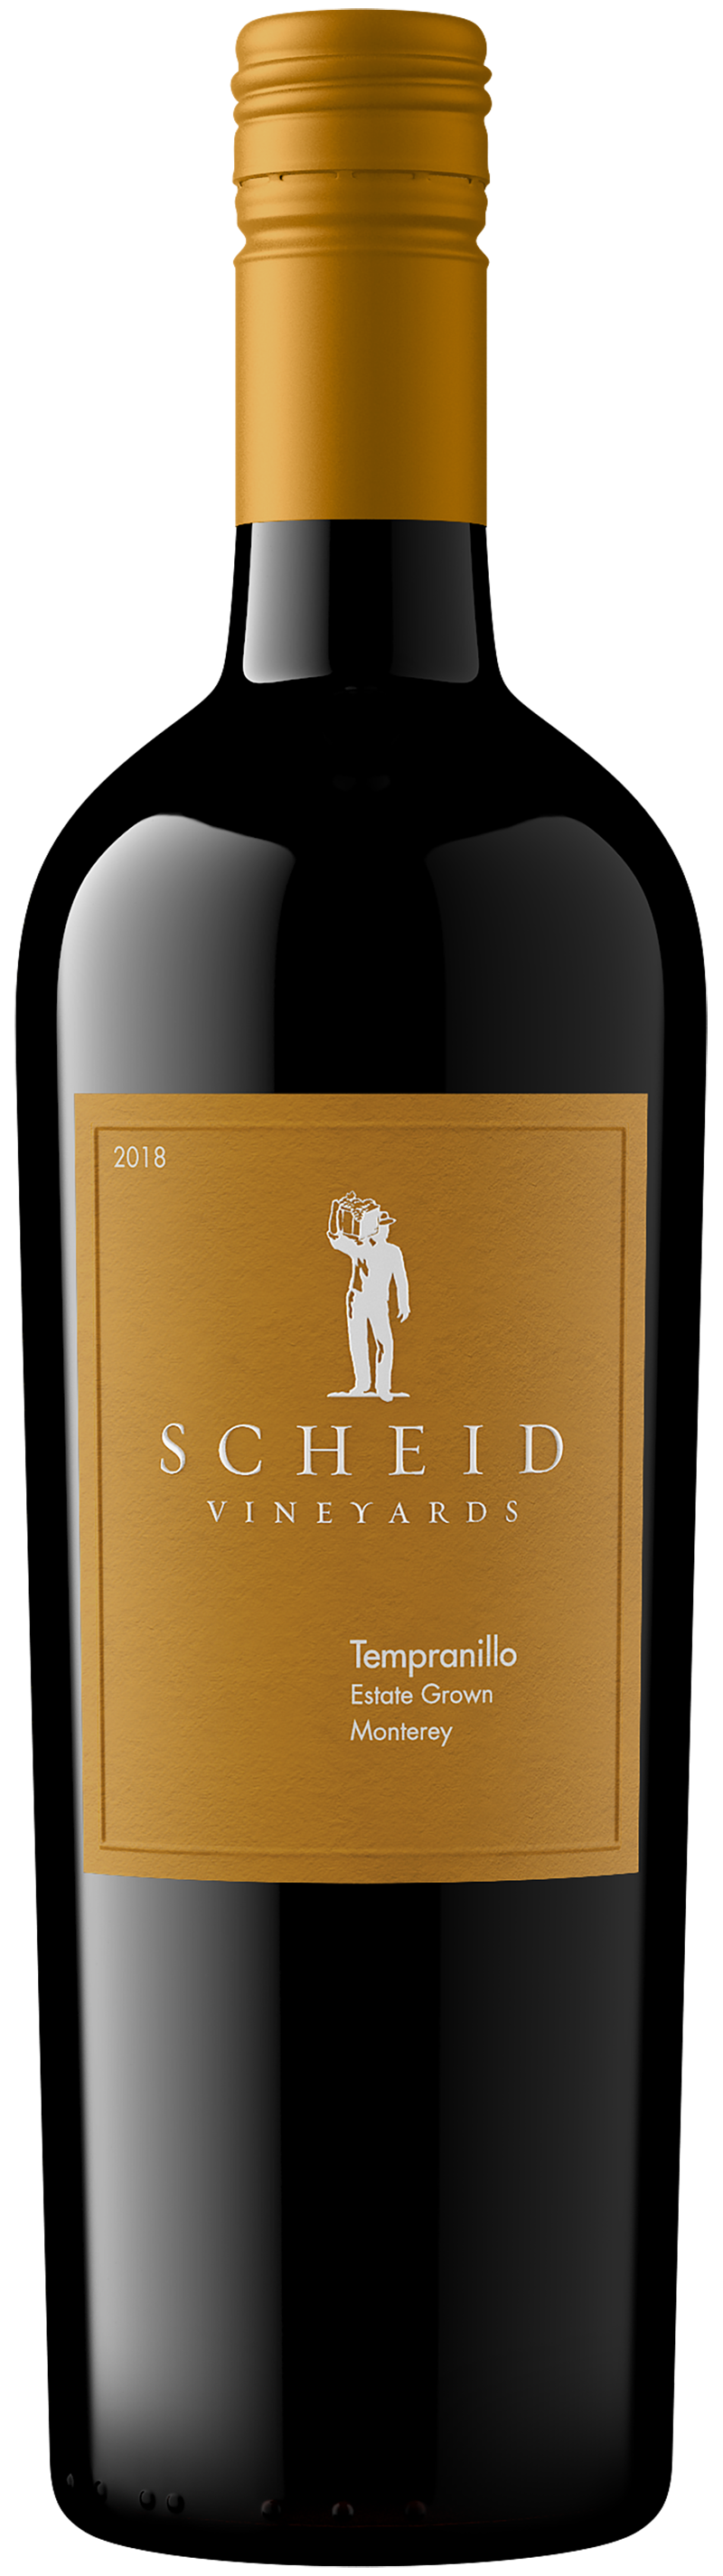 Scheid Vineyards - Products - 2018 Tempranillo